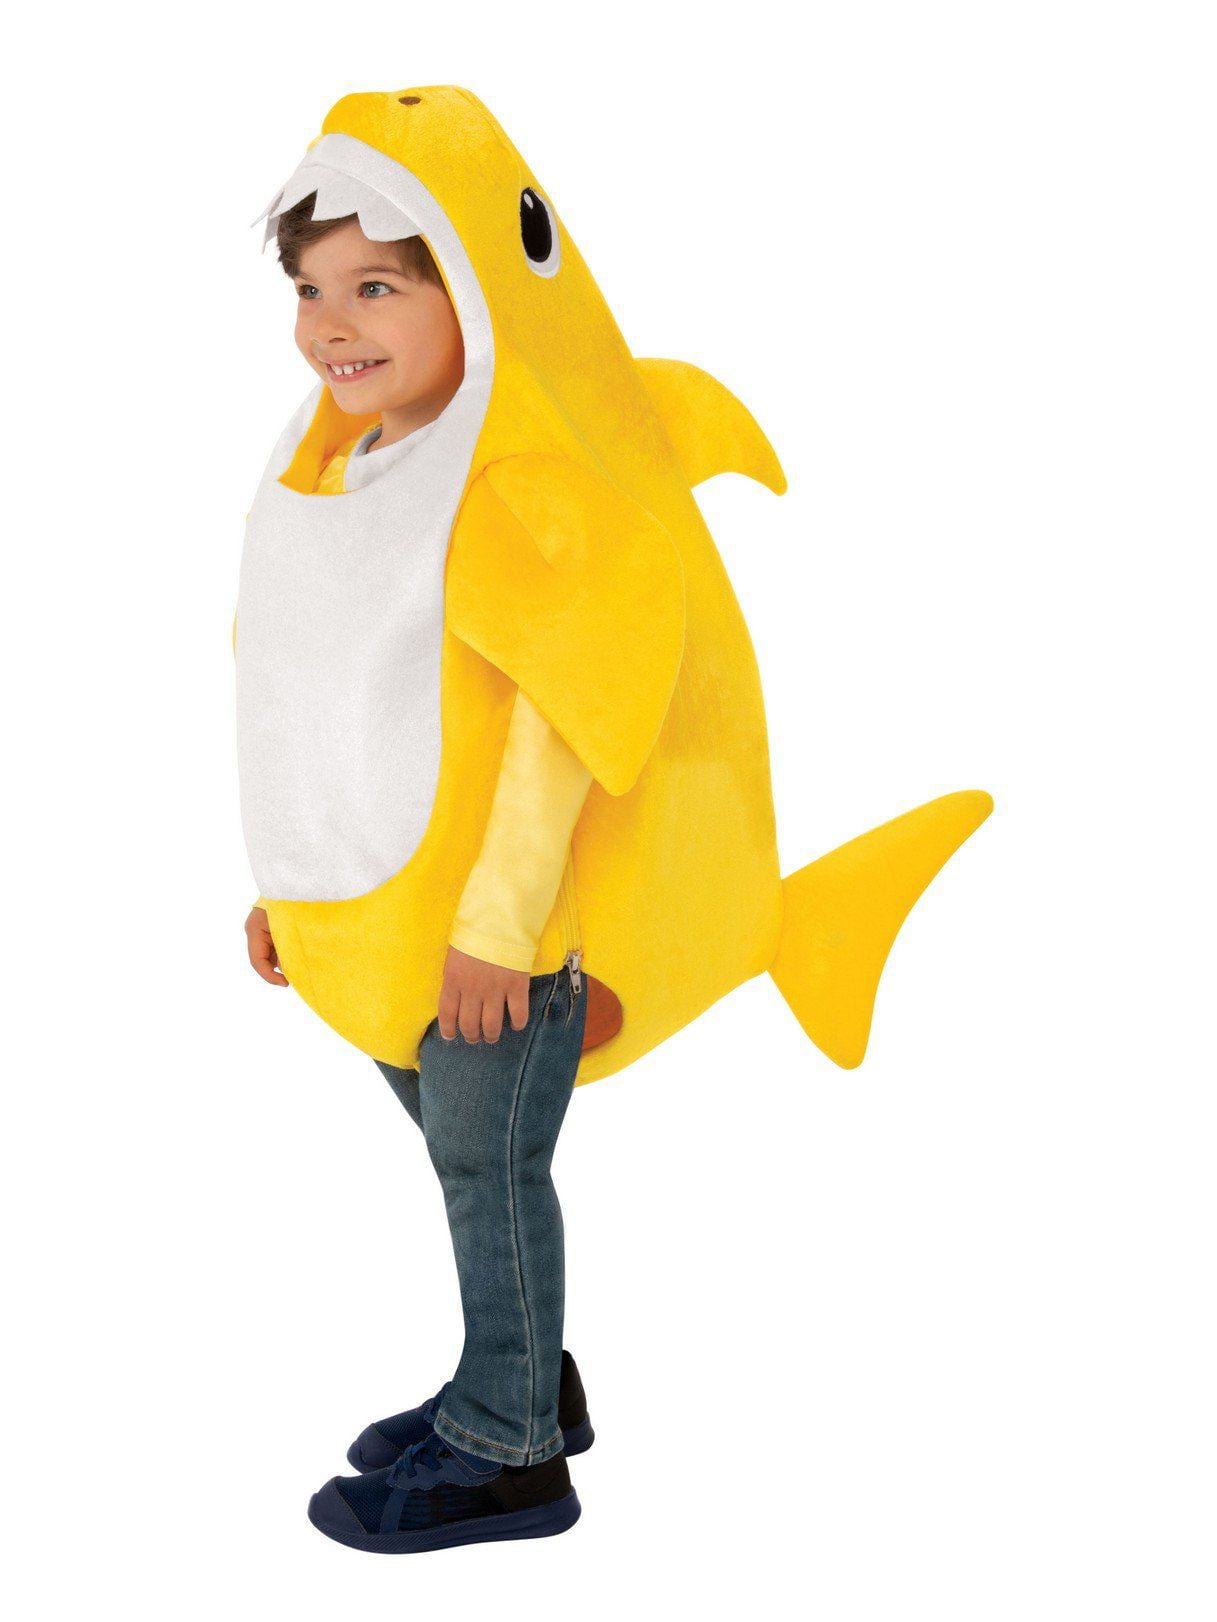 Baby Shark - Baby Shark Kids Costume